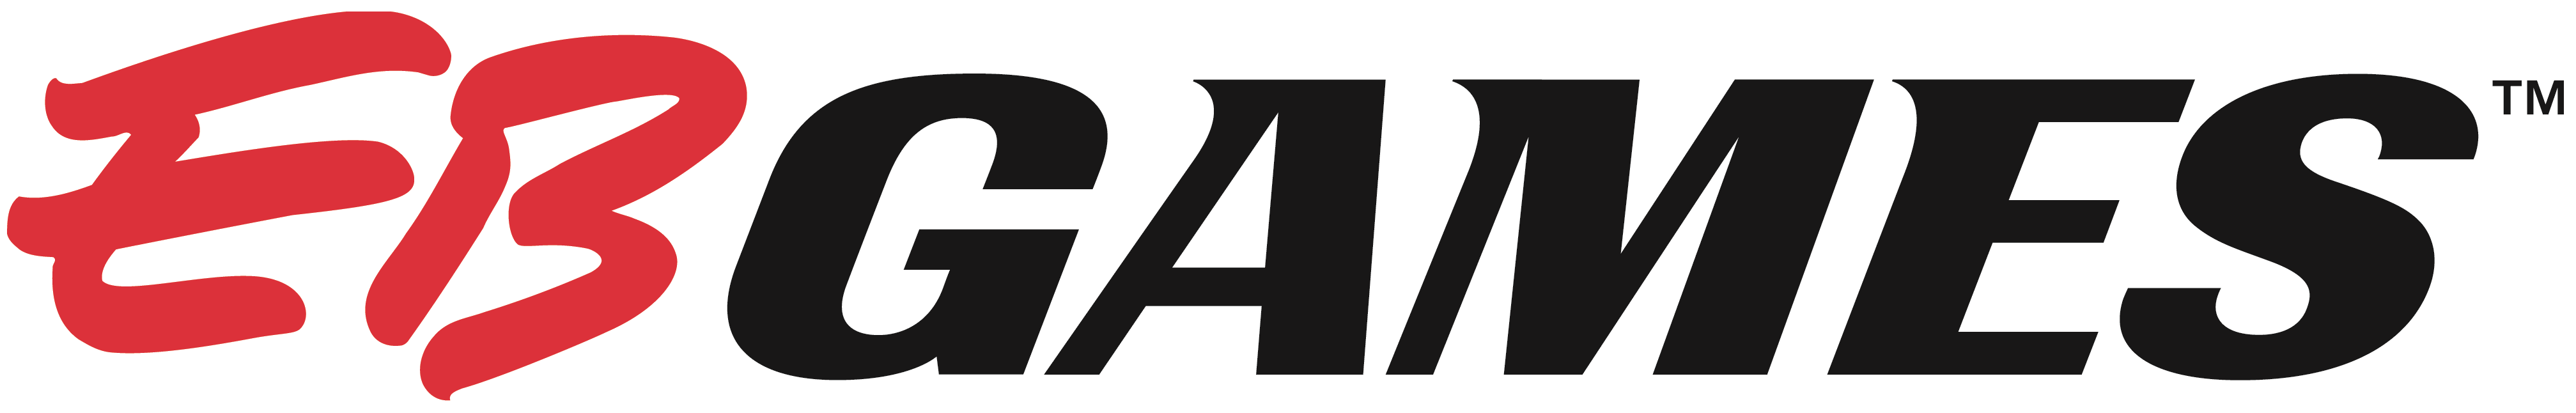 File:EB Games logo.png